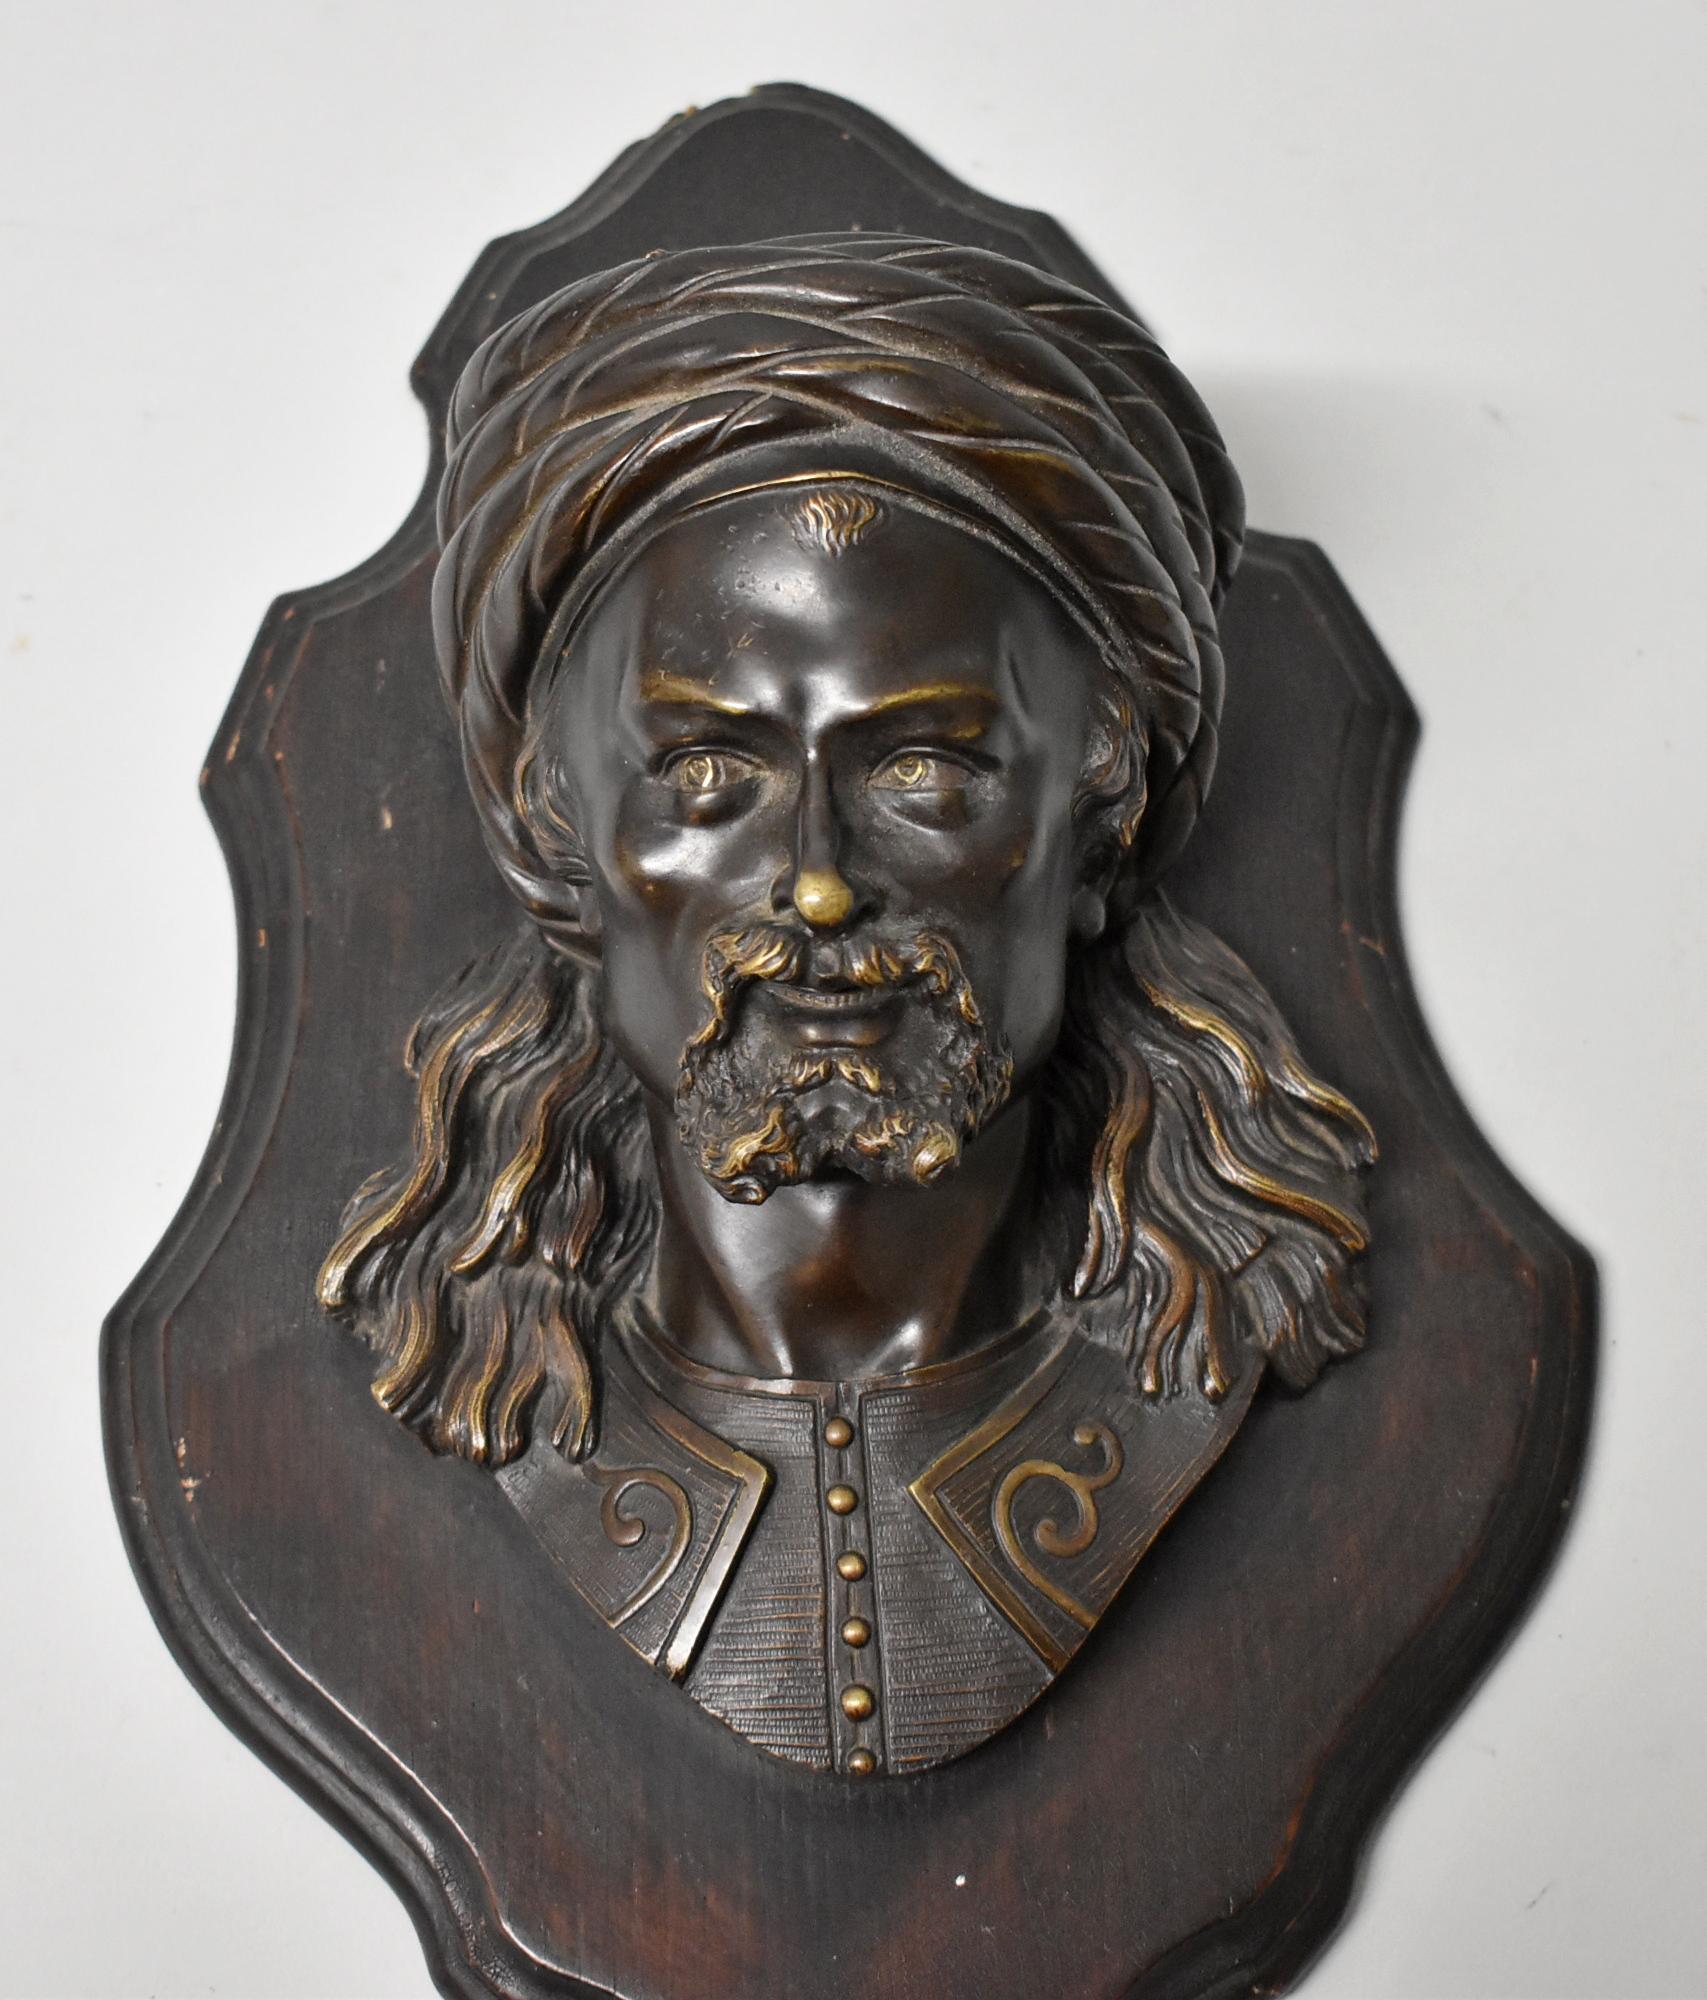 Plaque murale en bronze représentant une tête d'homme, estampillée LeBlanc. Homme arabe avec des poils au visage et un turban. Le buste est monté sur une planche de bois. Il y a un espace entre la statue et la plaque qui peut être utilisé comme